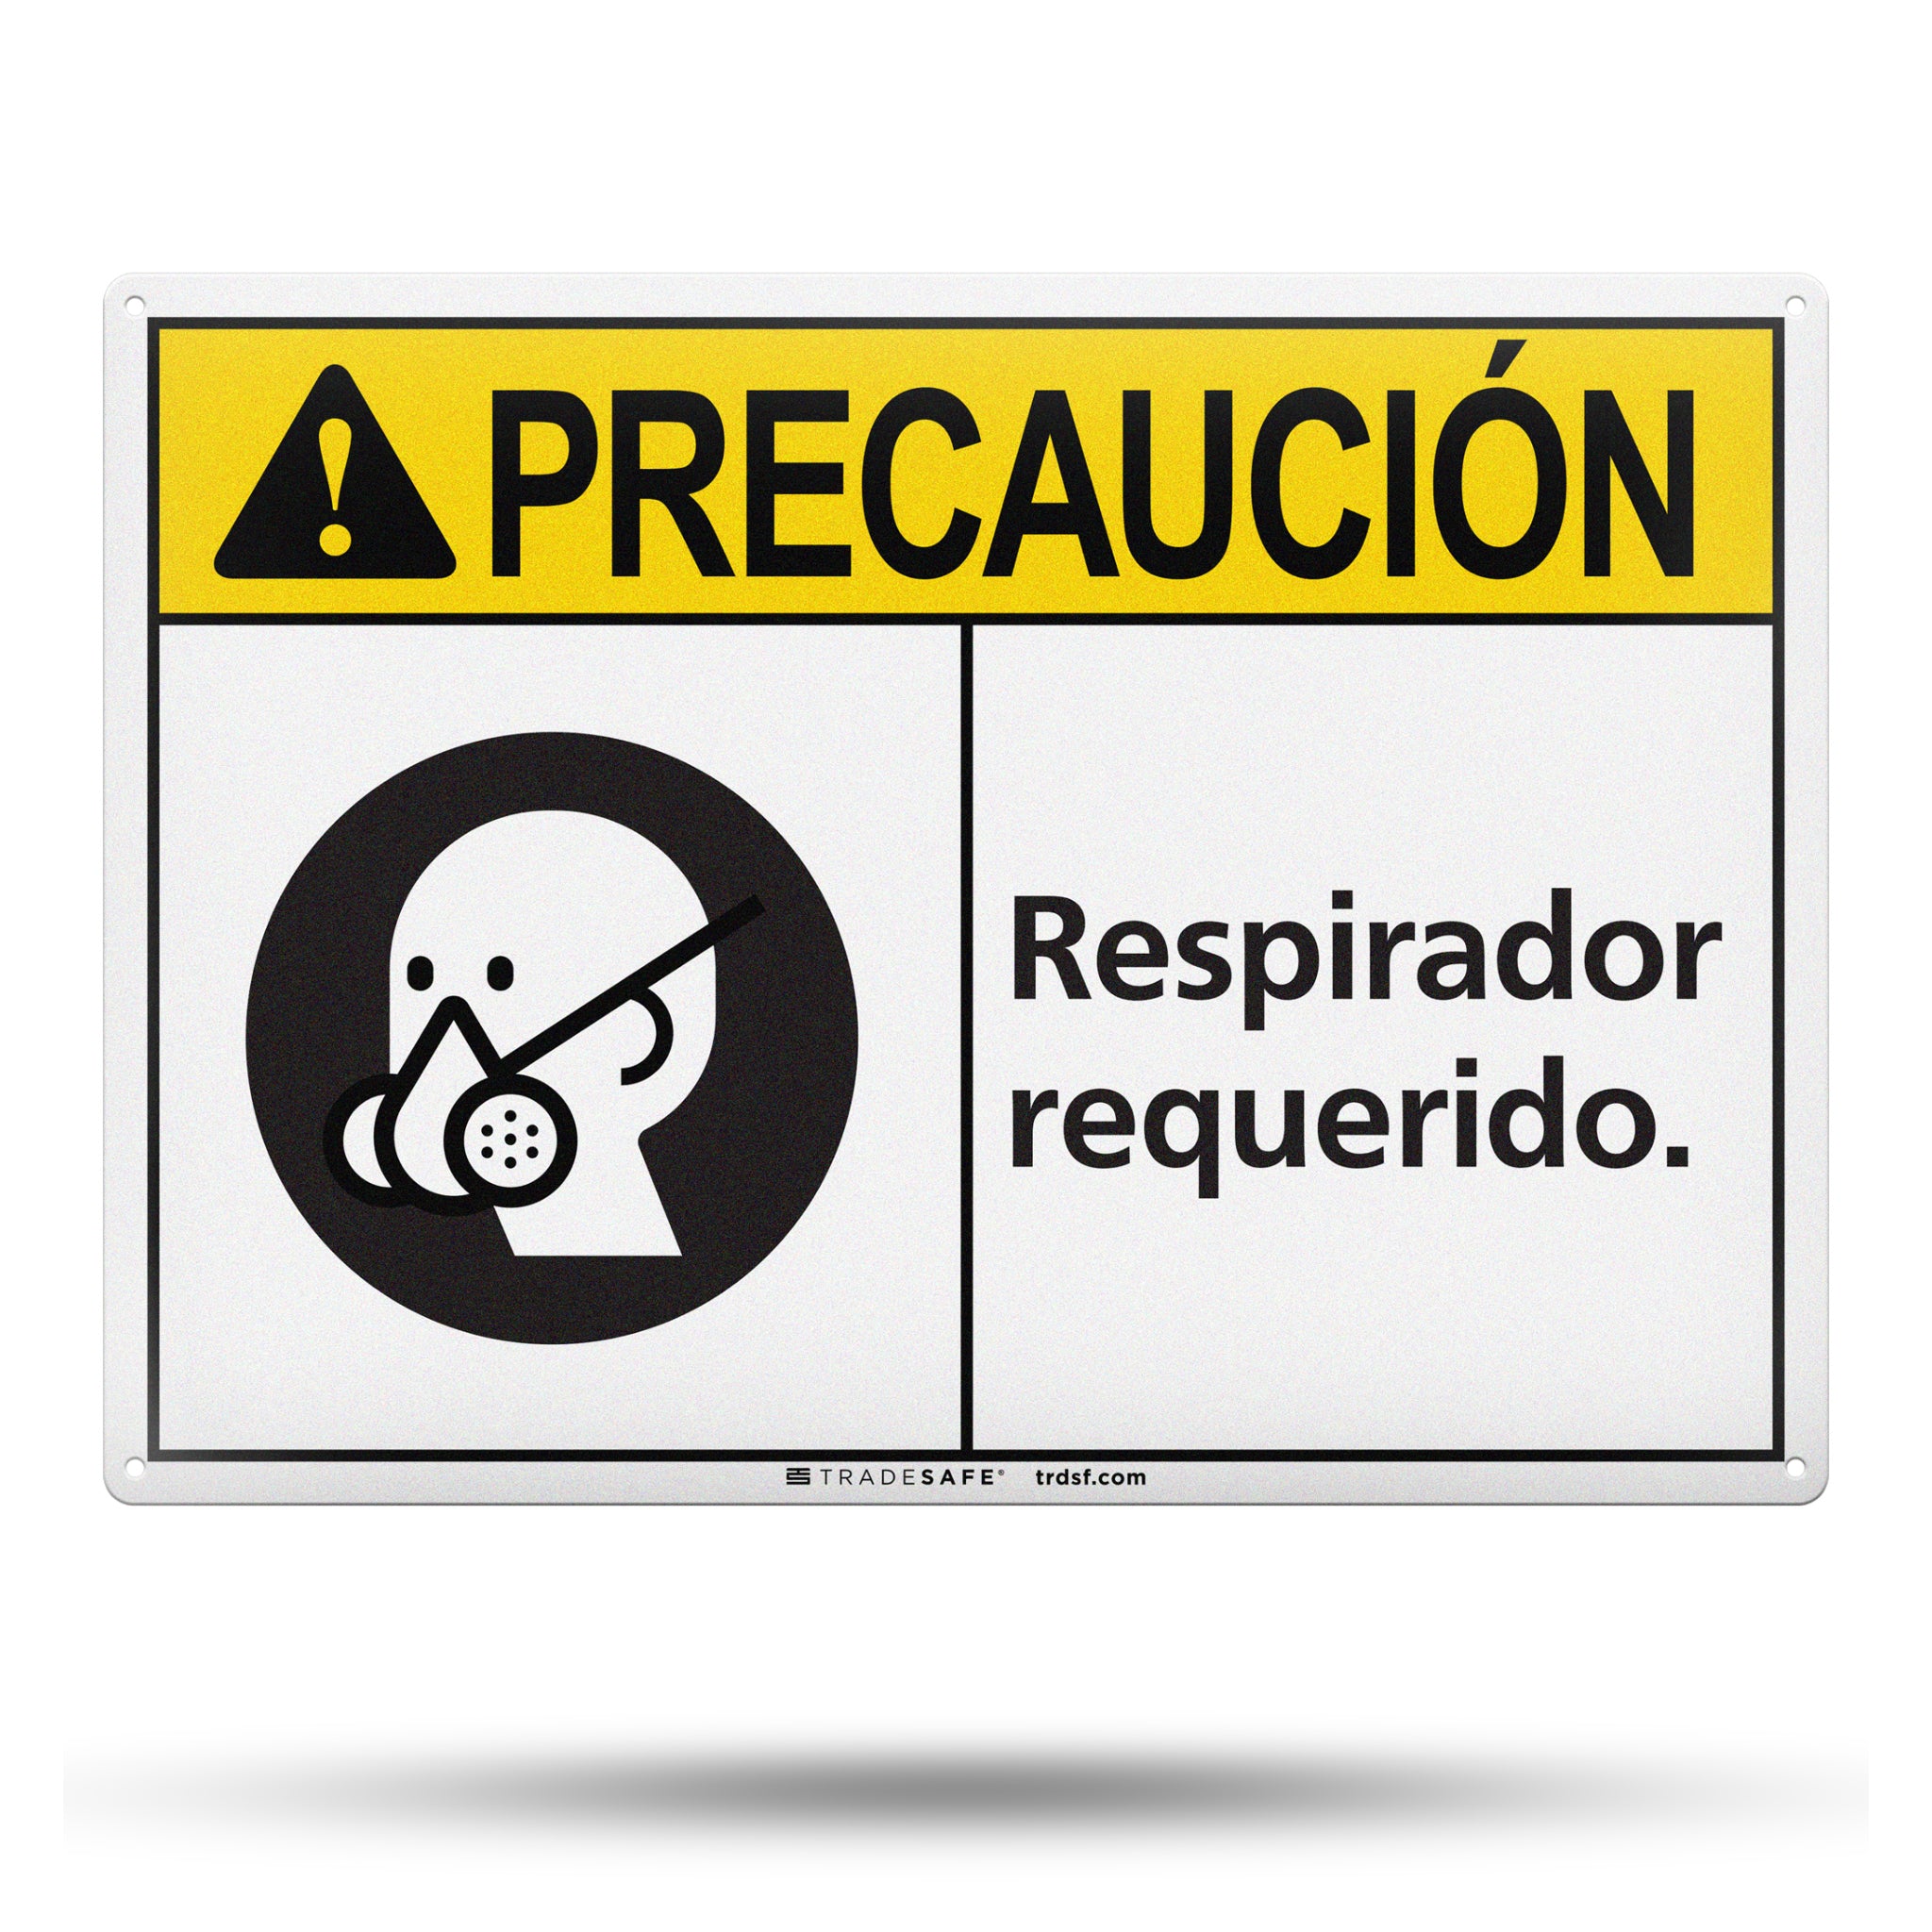 Respirador Requerido (Respirator Required) Aluminum Sign